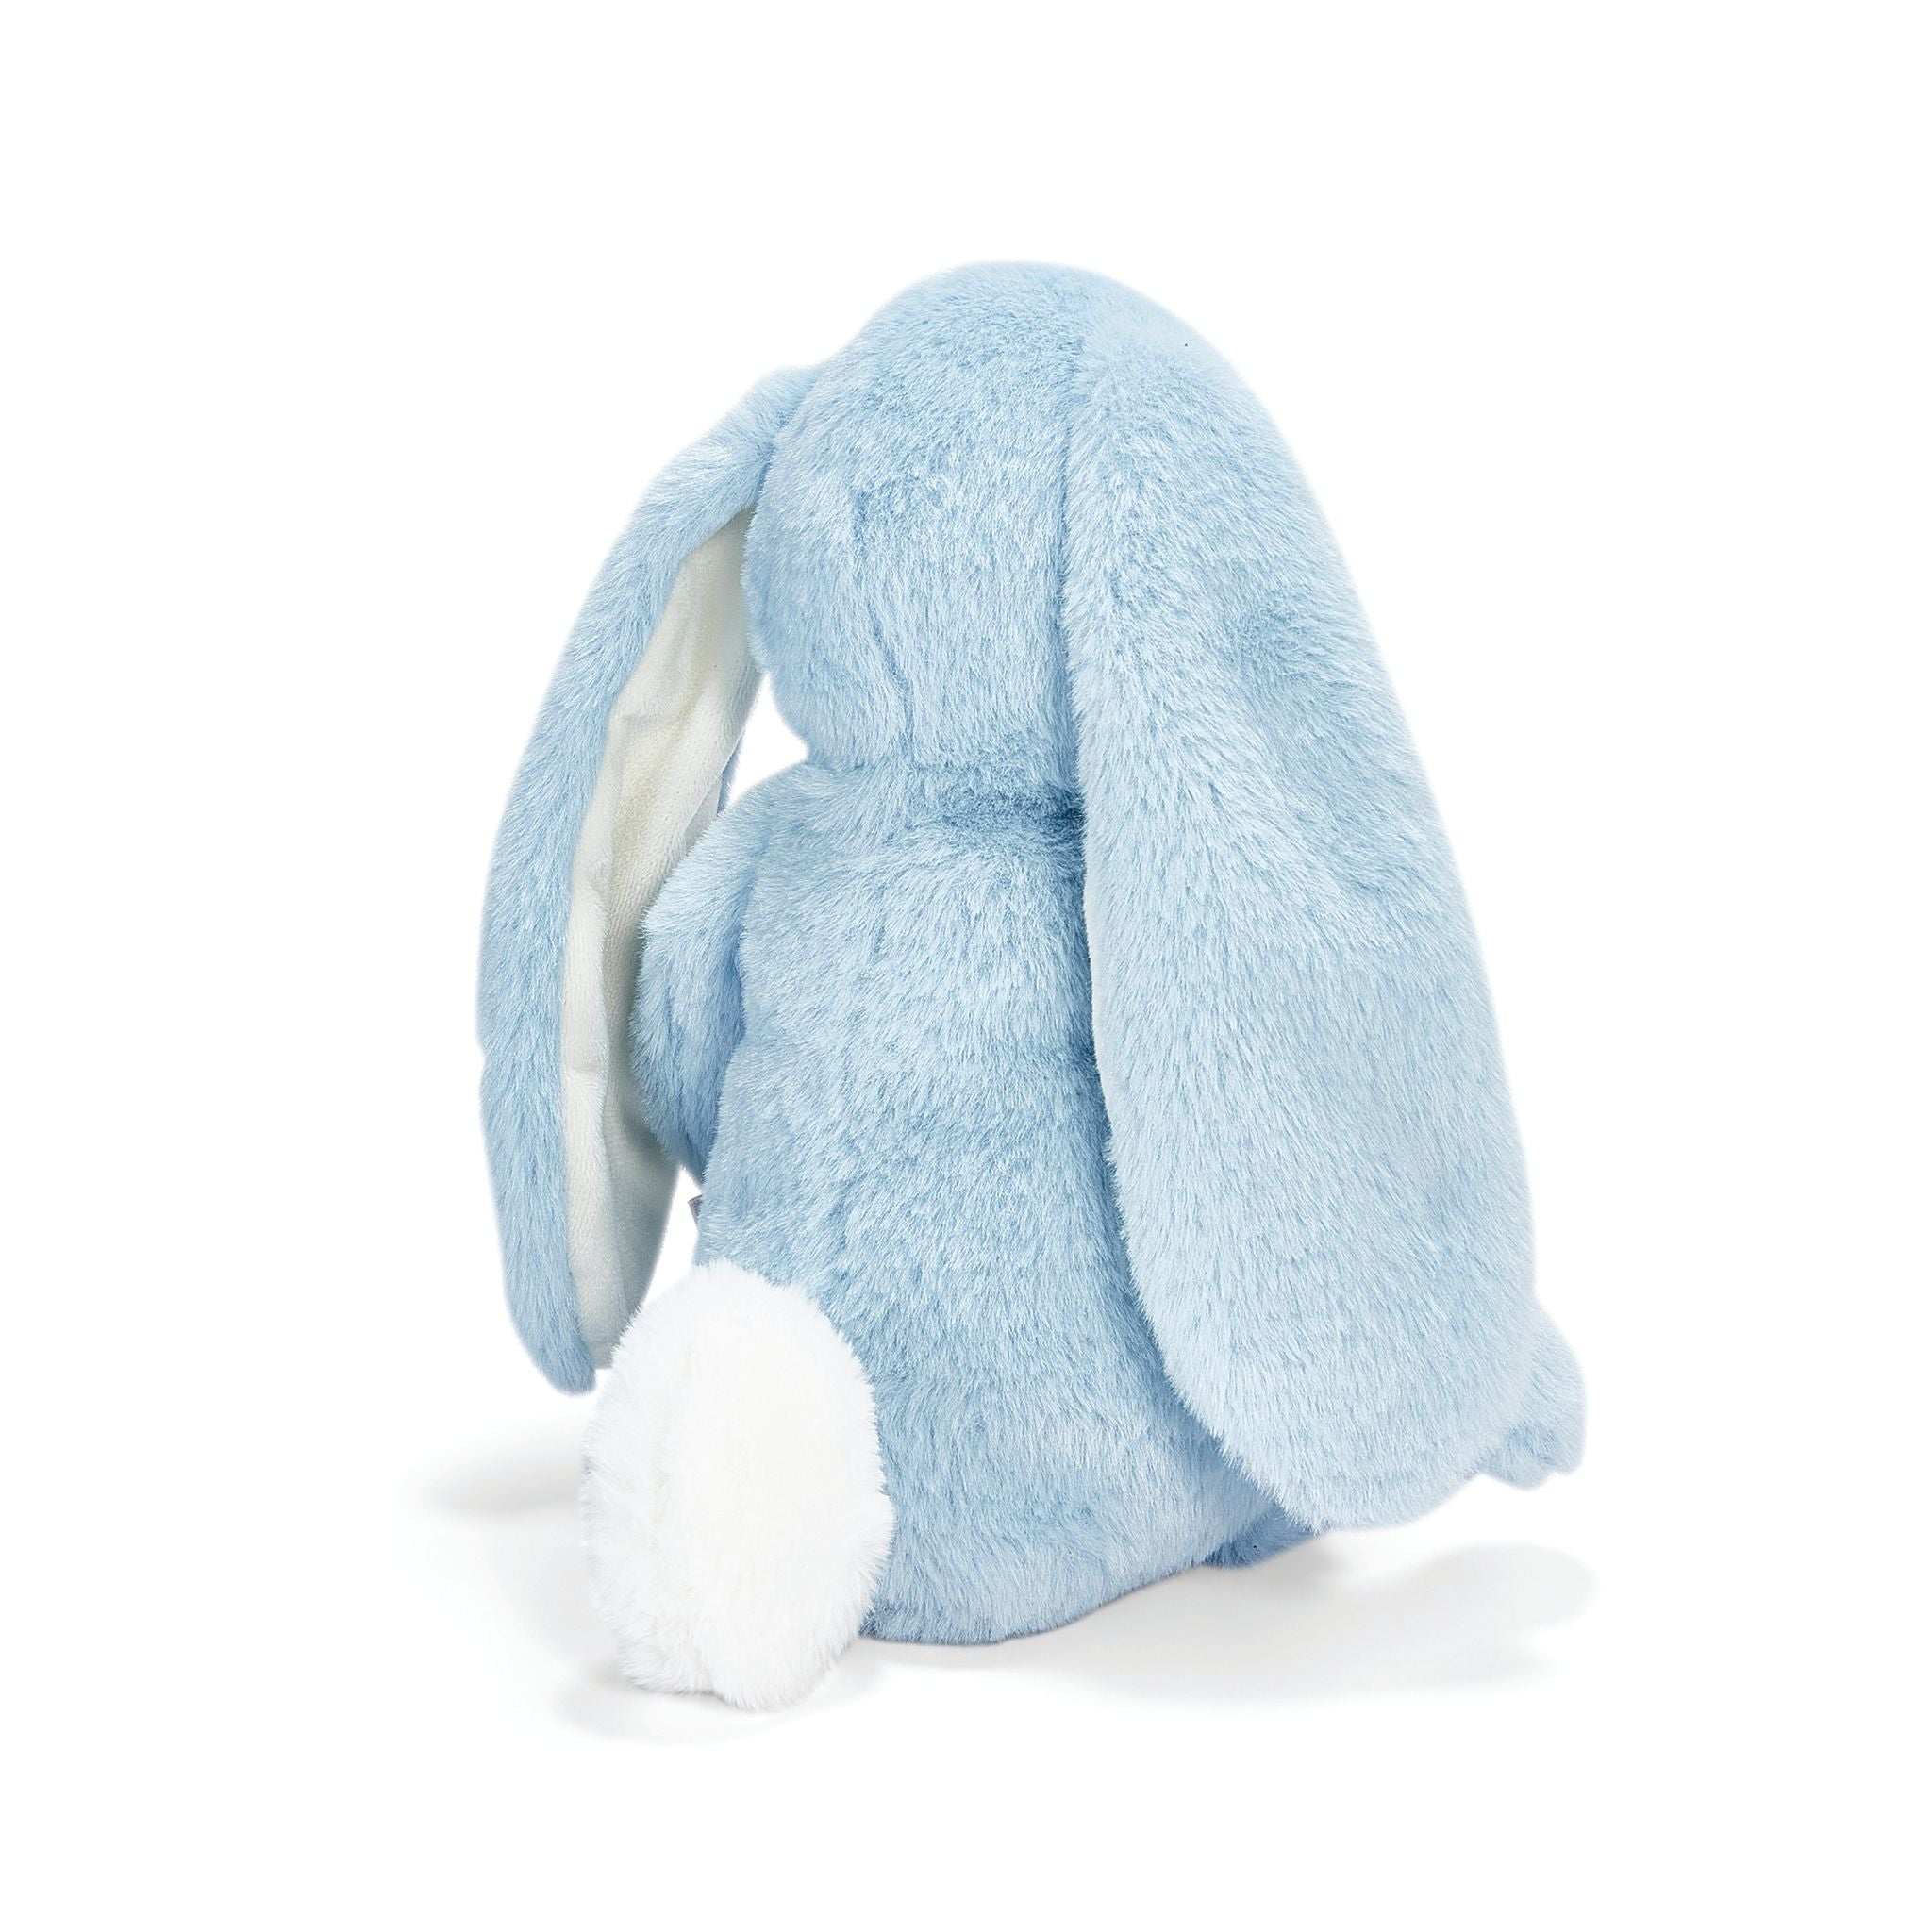 190324: Little Floppy Nibble 12" Bunny- Maui Blue